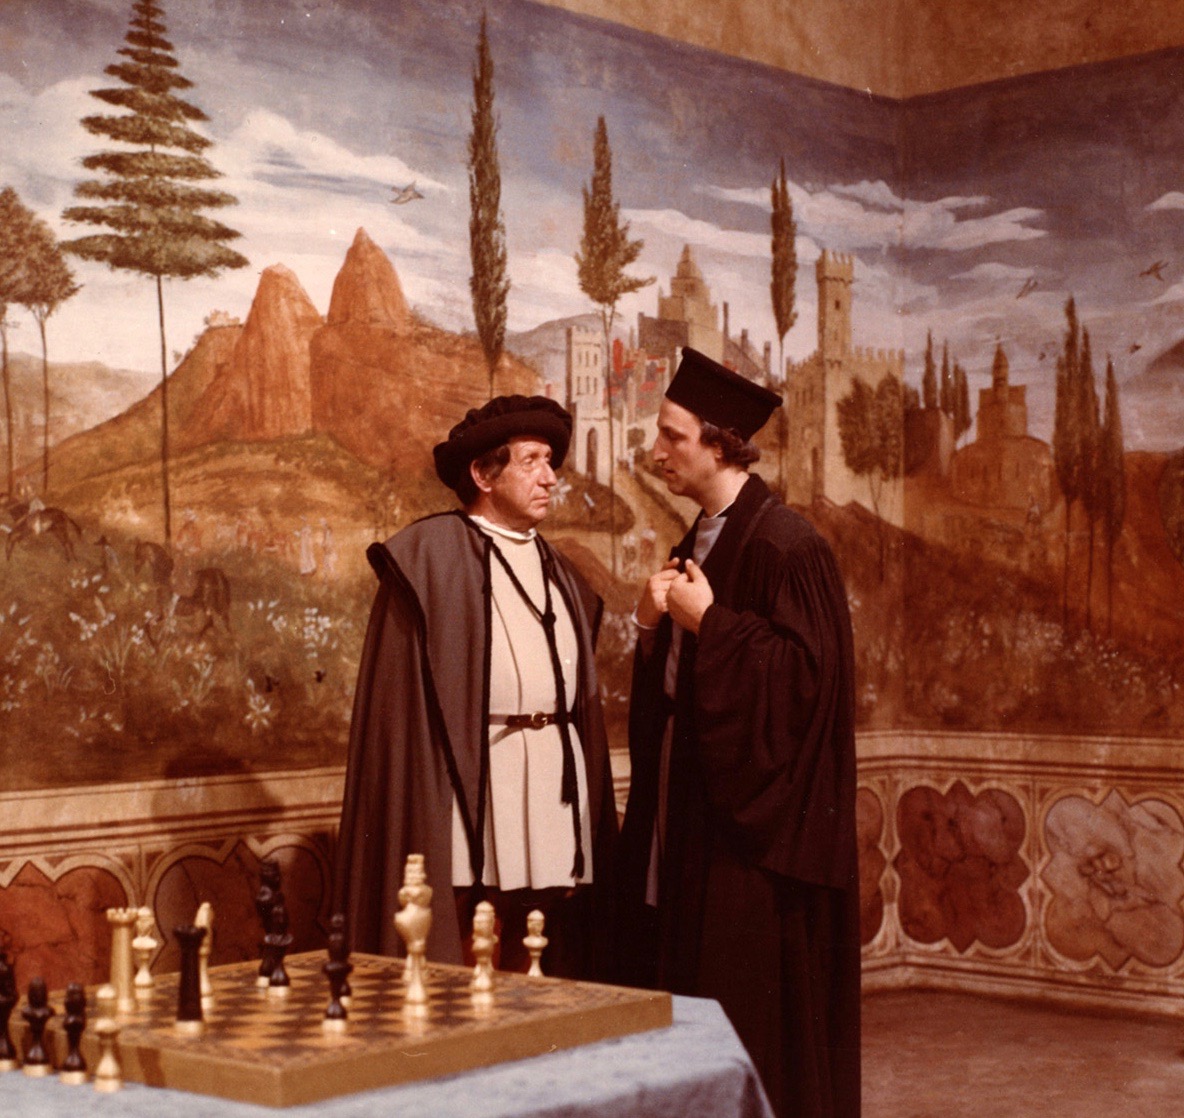 (3) L'età di Cosimo de Medici [The Age of the Medici] (Roberto Rossellini, 1972)